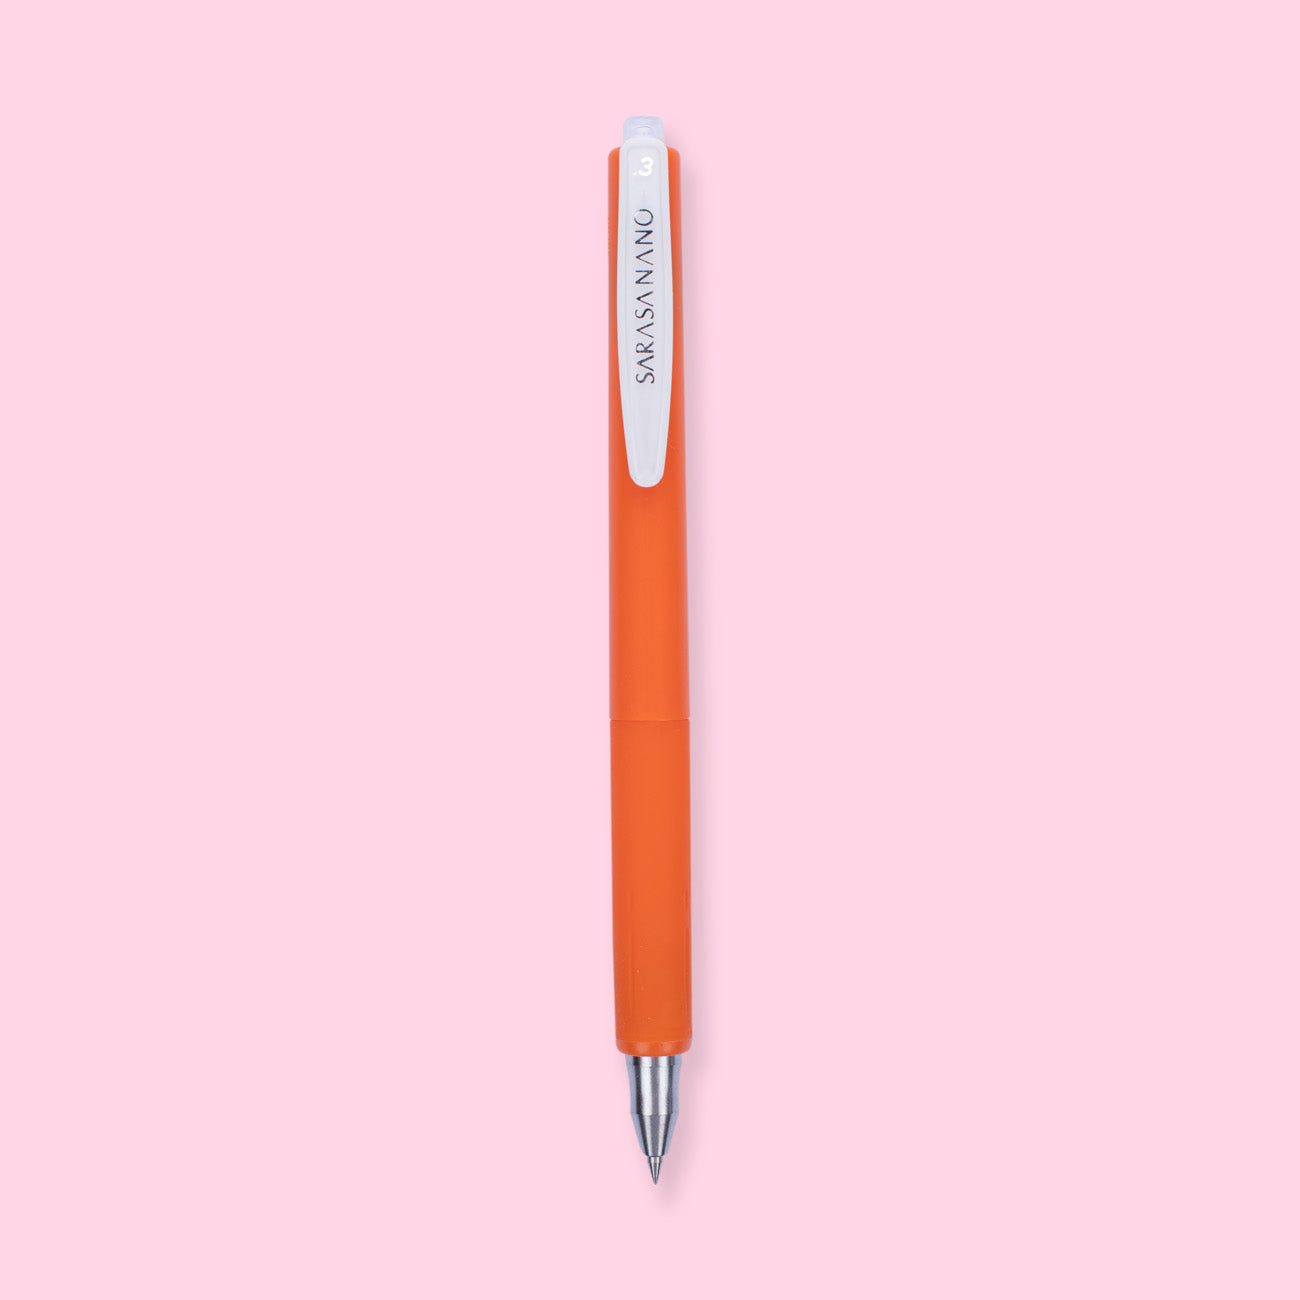 Zebra Sarasa NANO Gel Pen - 0.3 mm - Red Orange